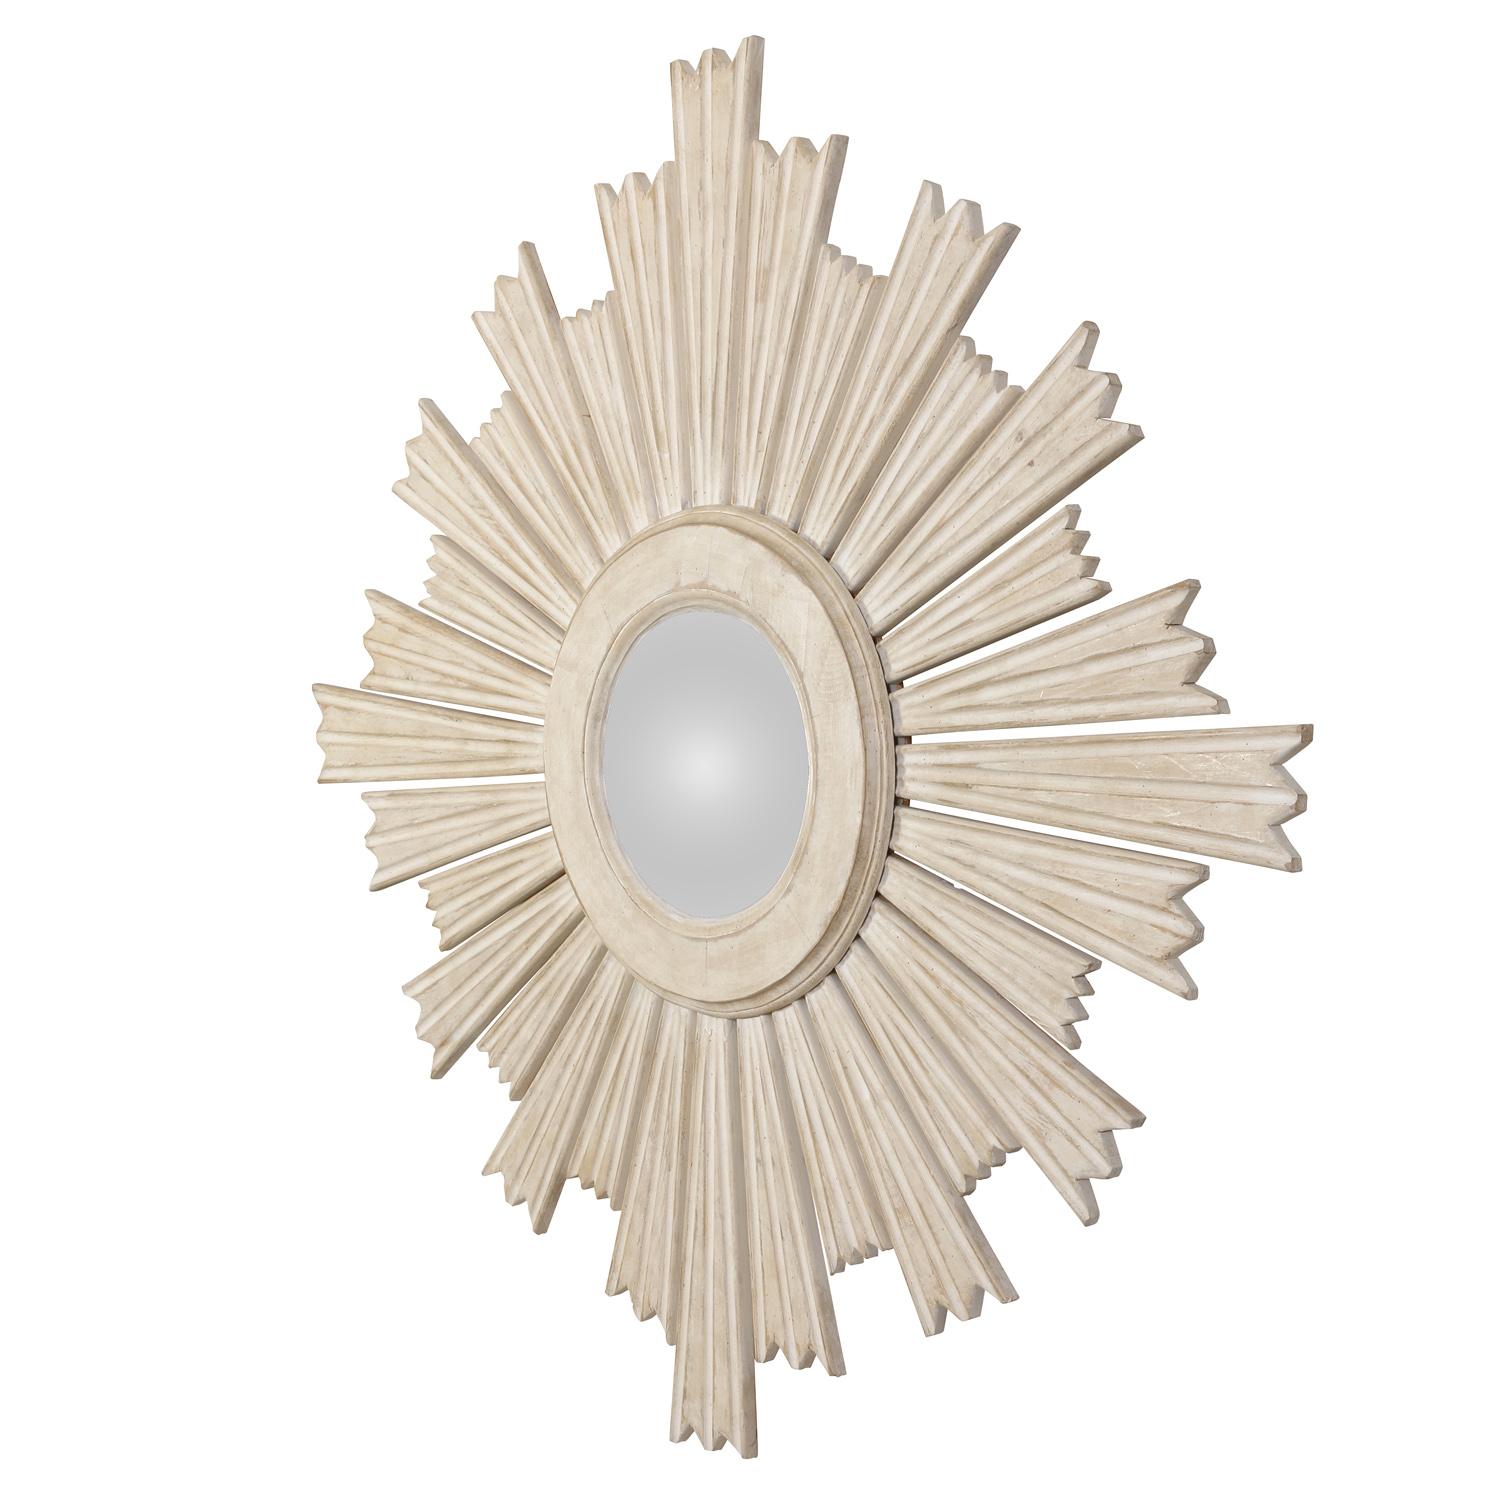 Ein großer, weiß bemalter Sonnenschliff-Spiegel mit unterschiedlich langen Strahlen, die mit einem zentralen, geformten Ring verbunden sind.  Der Spiegel ist in einem gräulichen Weiß gehalten.  Seine Größe und sein Maßstab machen diesen Spiegel zu